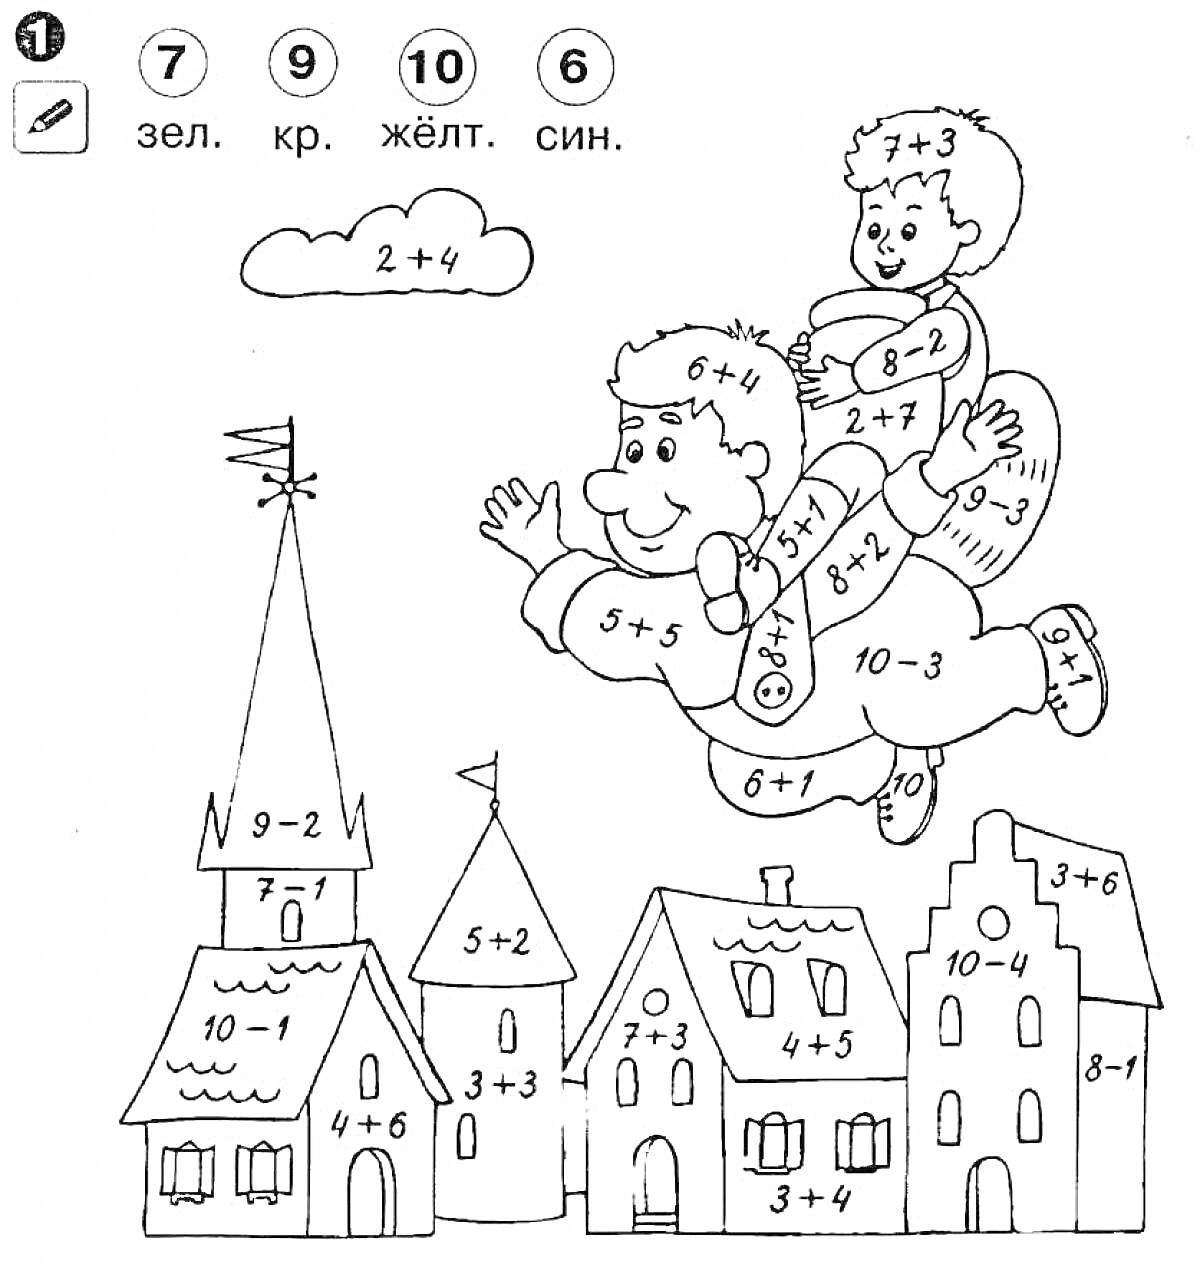 Раскраска с математическими примерами (2 класс) - летающий человек с ребёнком на спине, здания, облако